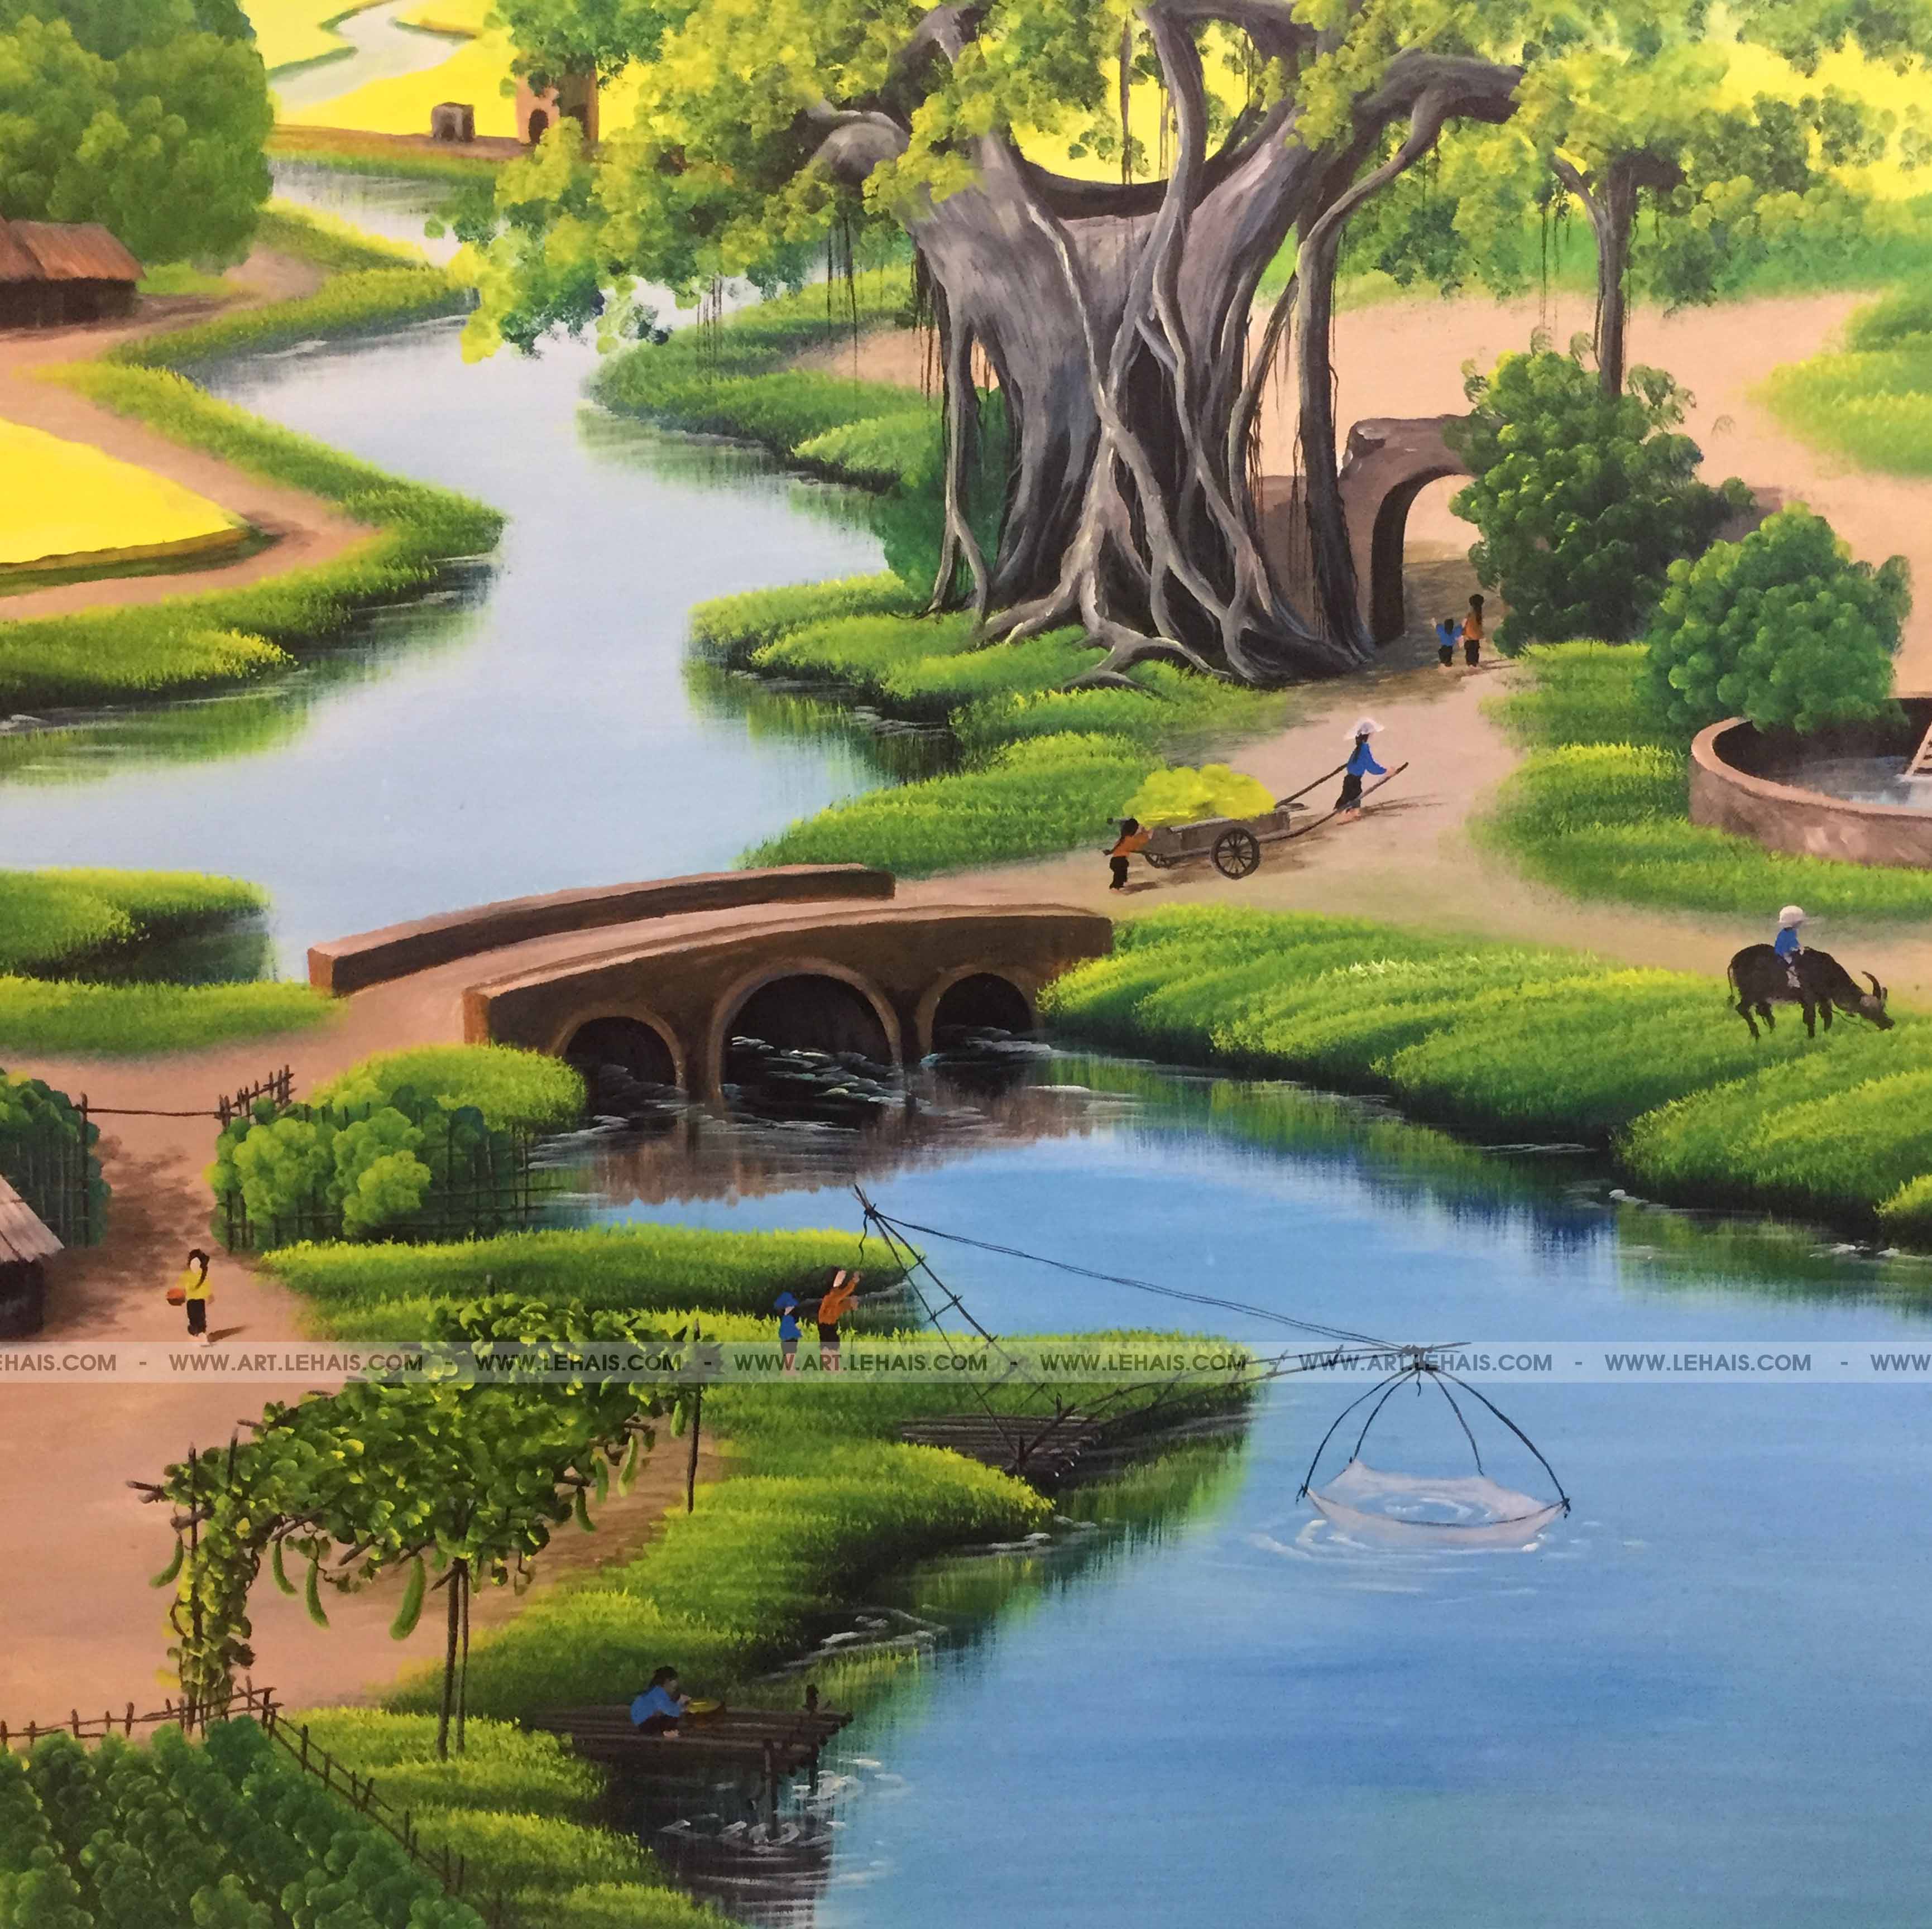 Vẽ Tranh Tường 3D Cảnh Đồng Quê Tại Gia Đình Ở Sơn Tây, Hà Nội - Tt173Lhar  - Lehais Art